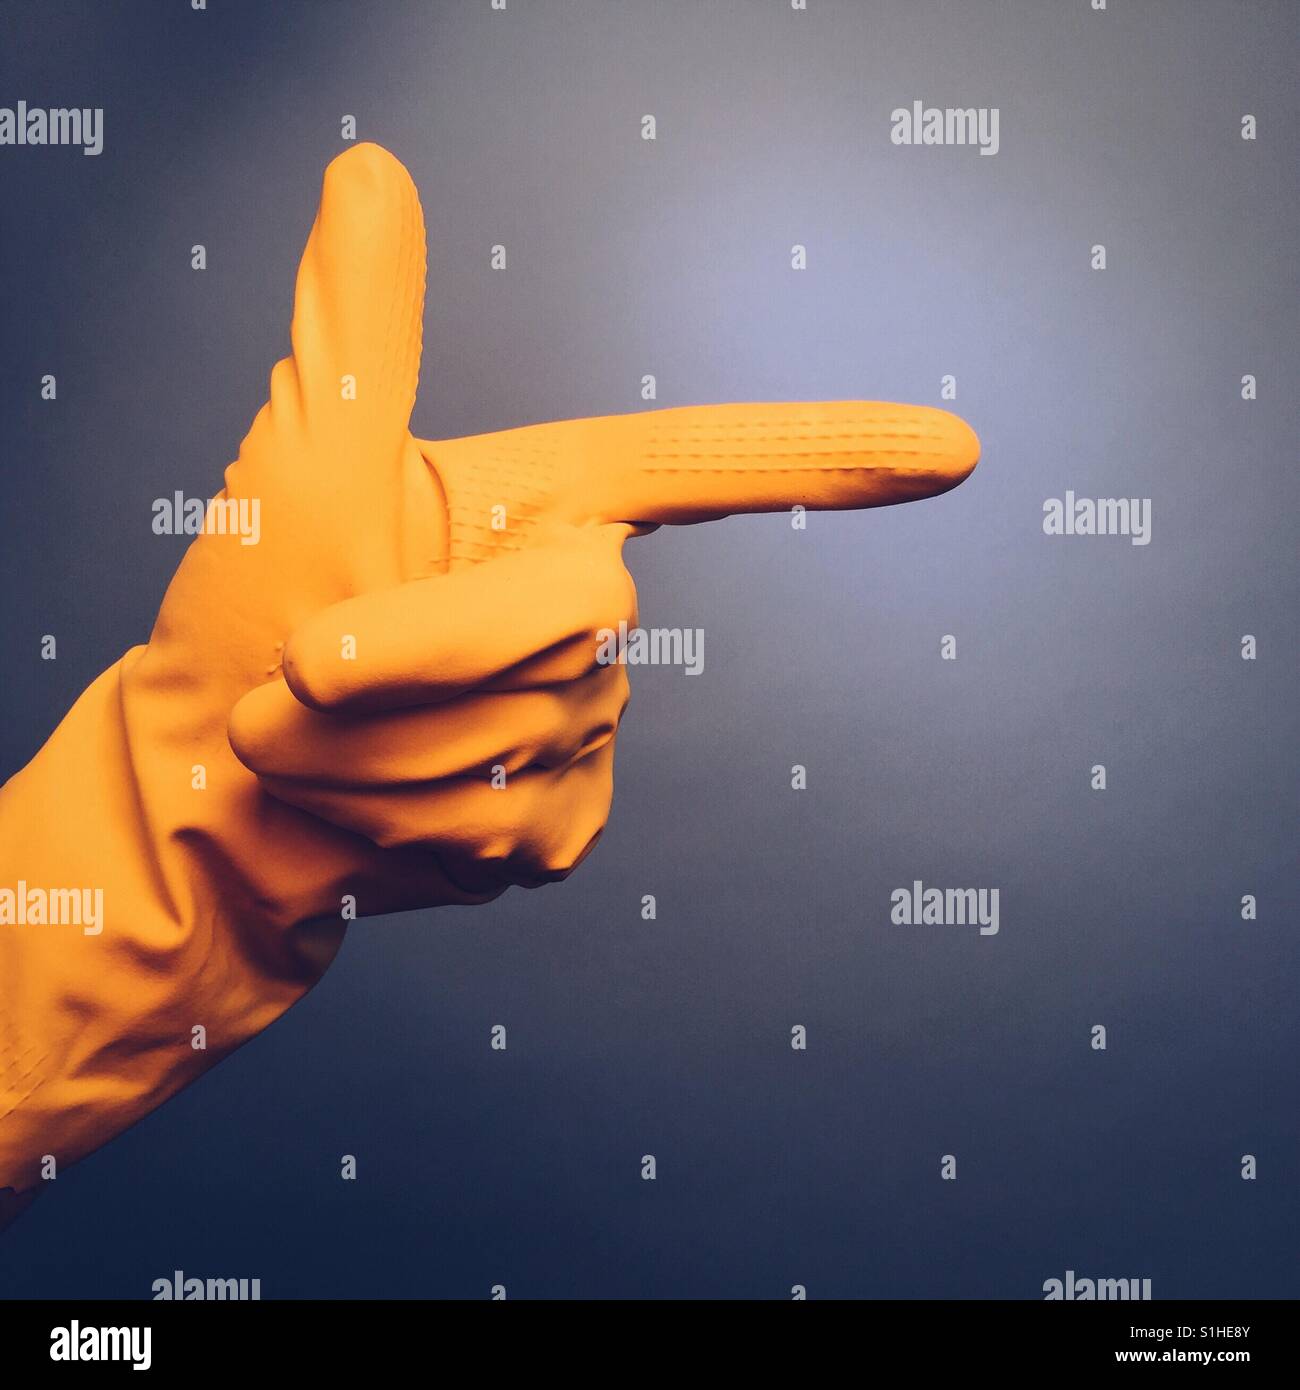 Die Hand eines Mannes in einem gelben Gummihandschuh macht eine Geste auf blauem Grund die hand zeigen Stockfoto